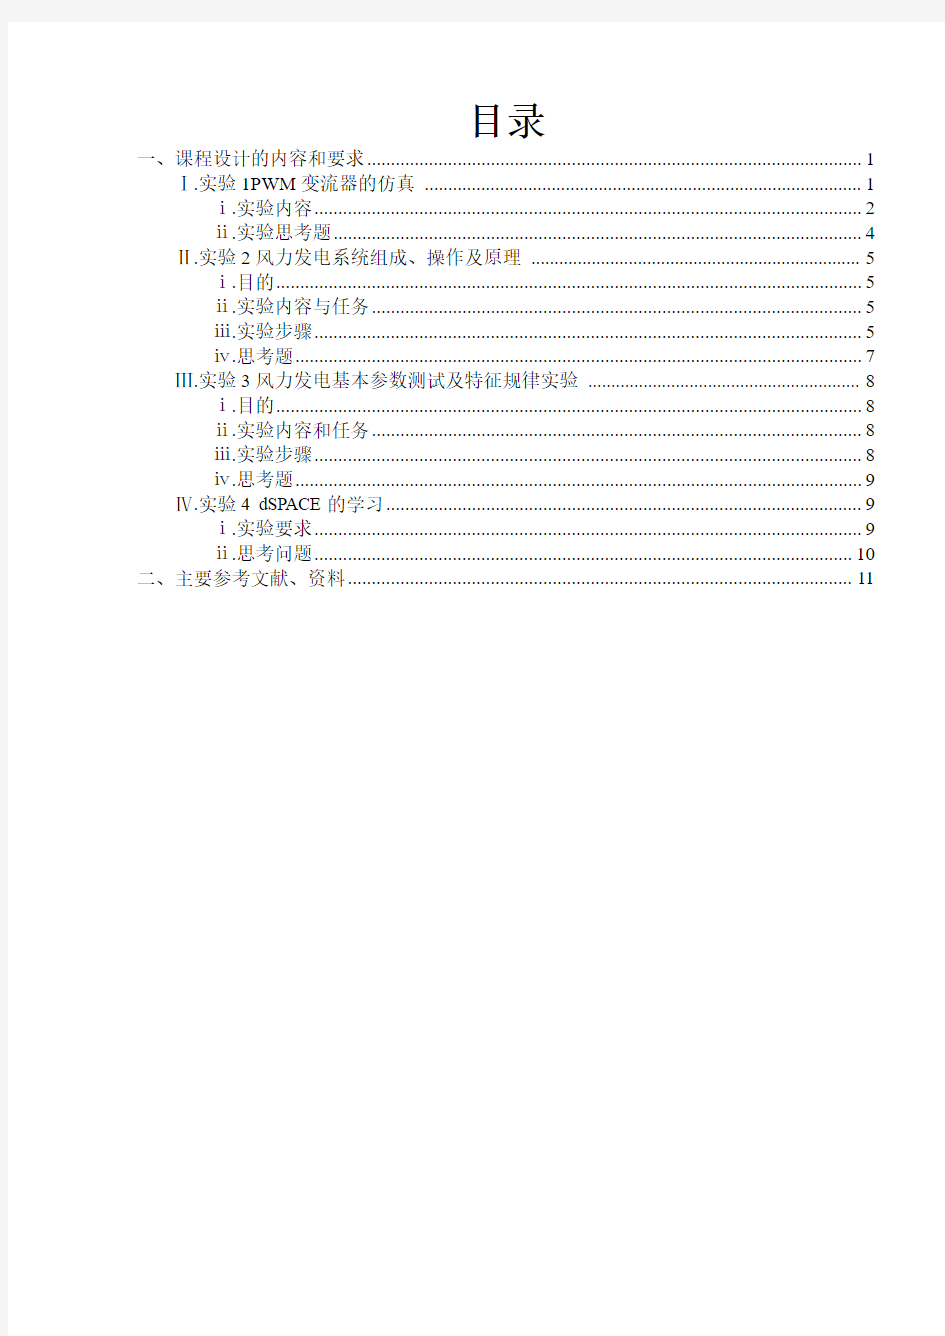 新能源综合实验报告完整版上交板.pdf